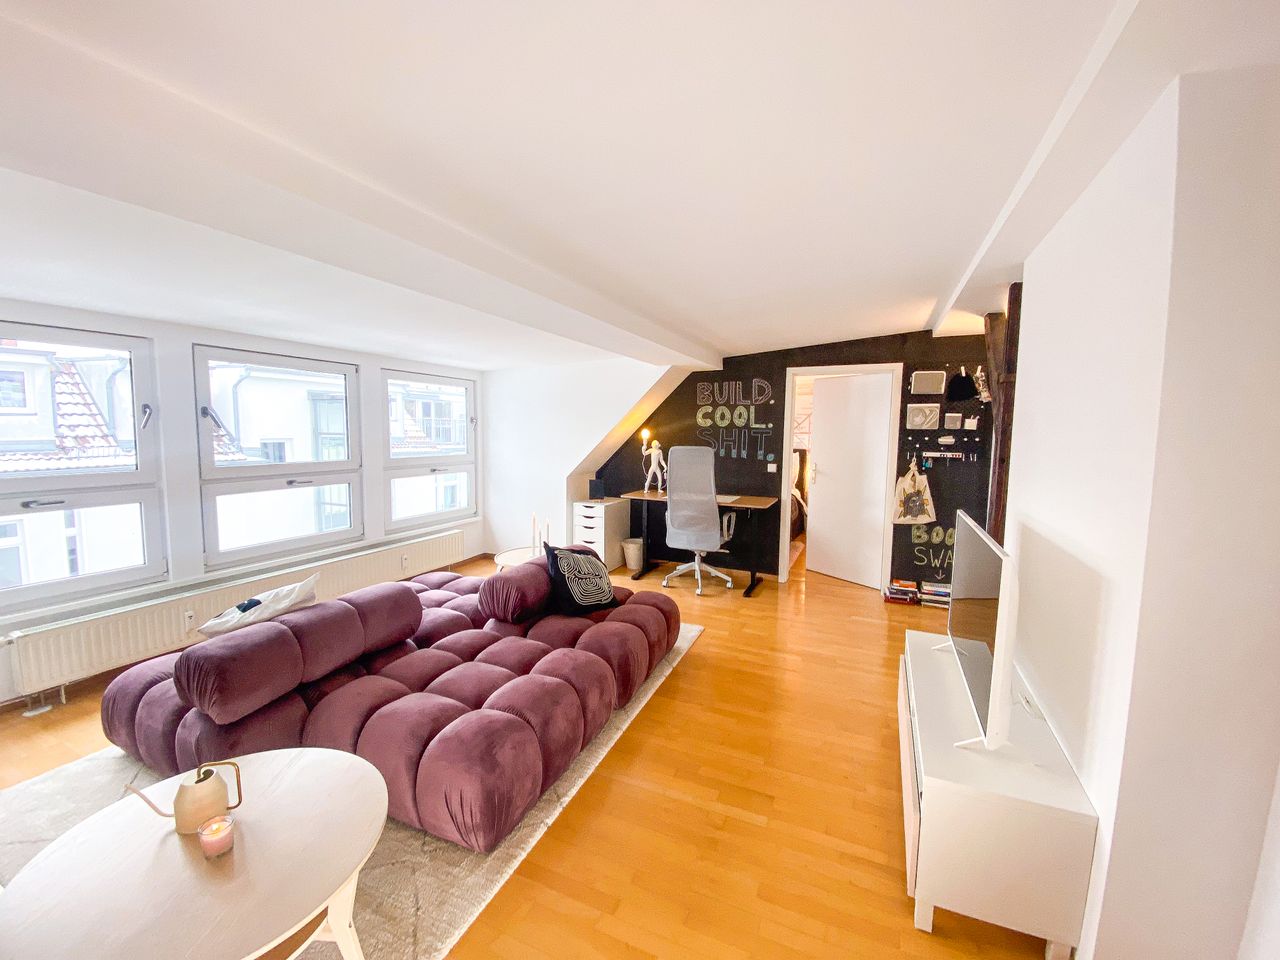 'GLEN' - beautiful, renovated top floor apartment in Prenzlauer Berg